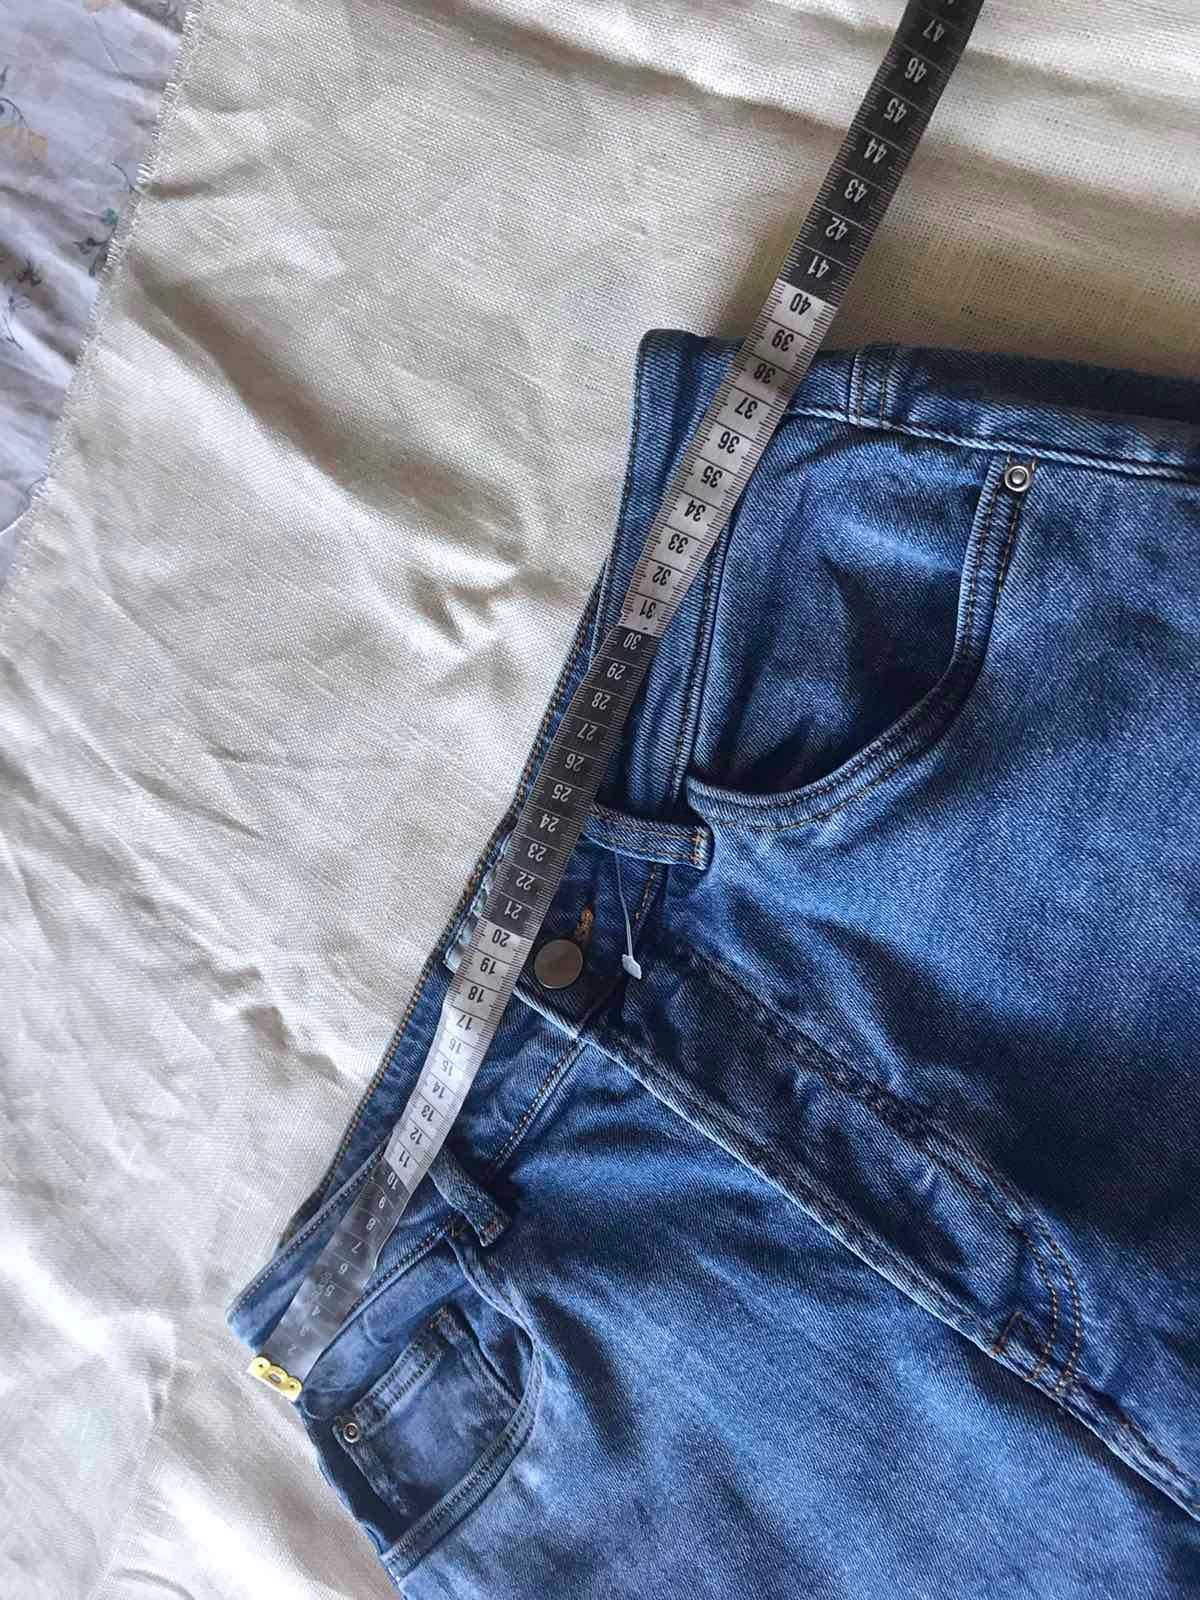 Женские джинсы  джинсы Essentials на пуговицах размер 46-48 .